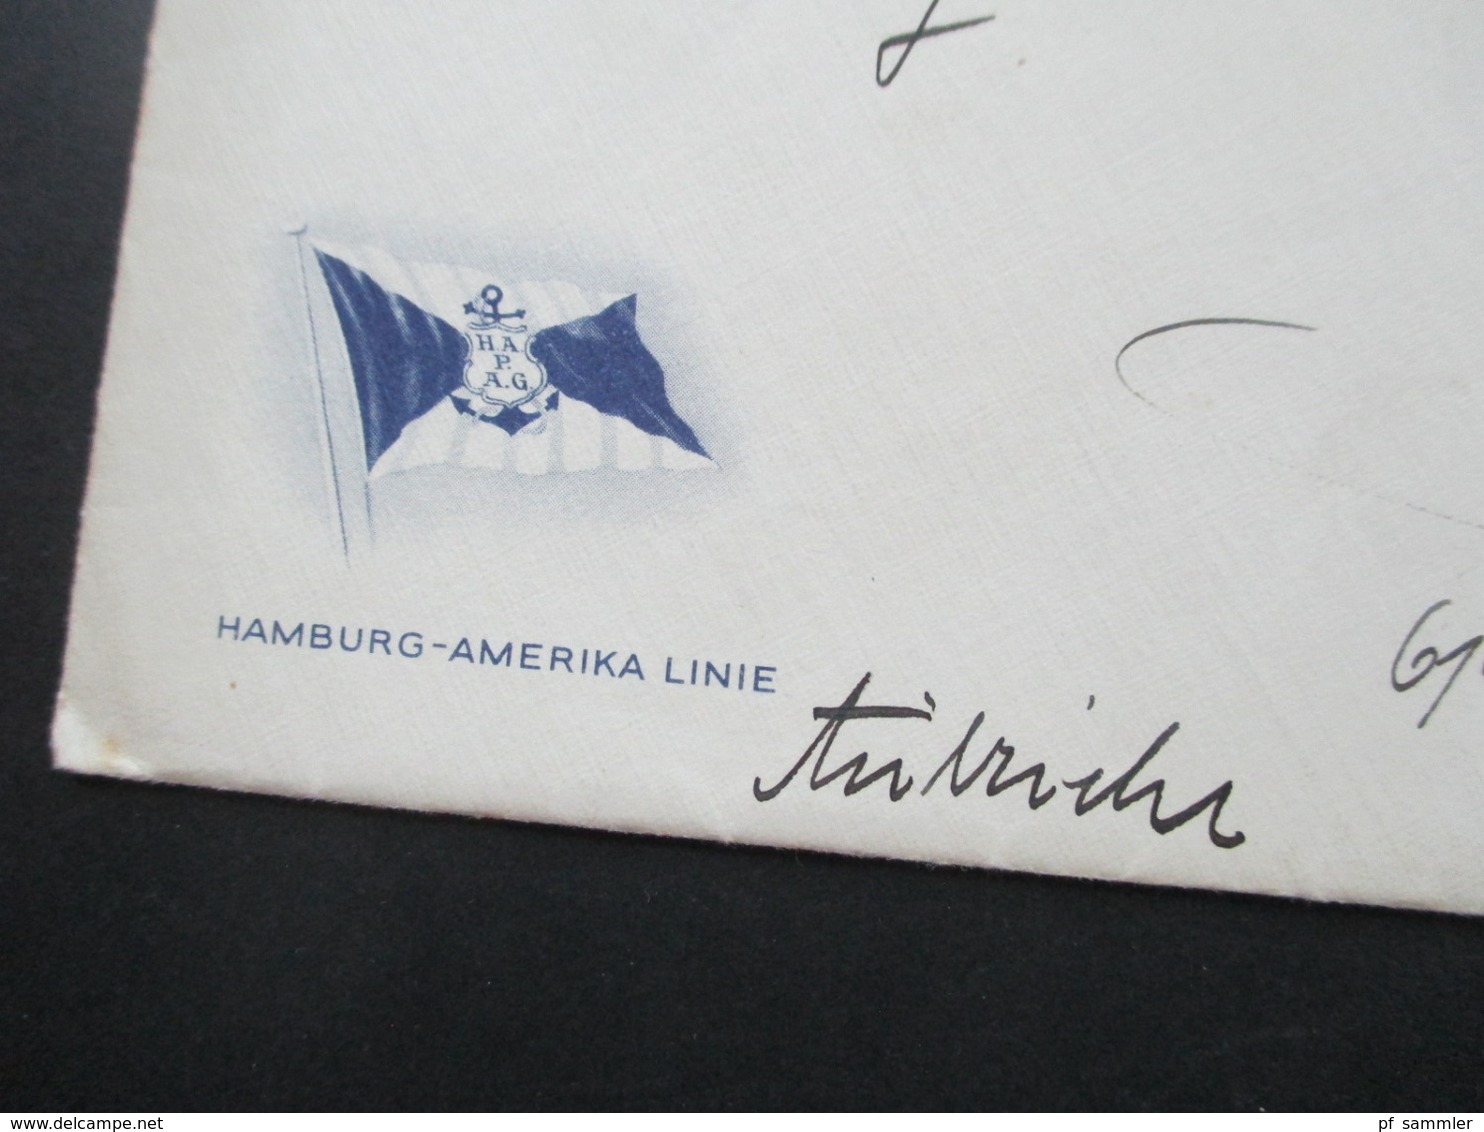 Griechenland 1936 Umschlag und Beleg der Hamburg Amerika Linie geschrieben in Milwaukee nach Wien. HAPAG